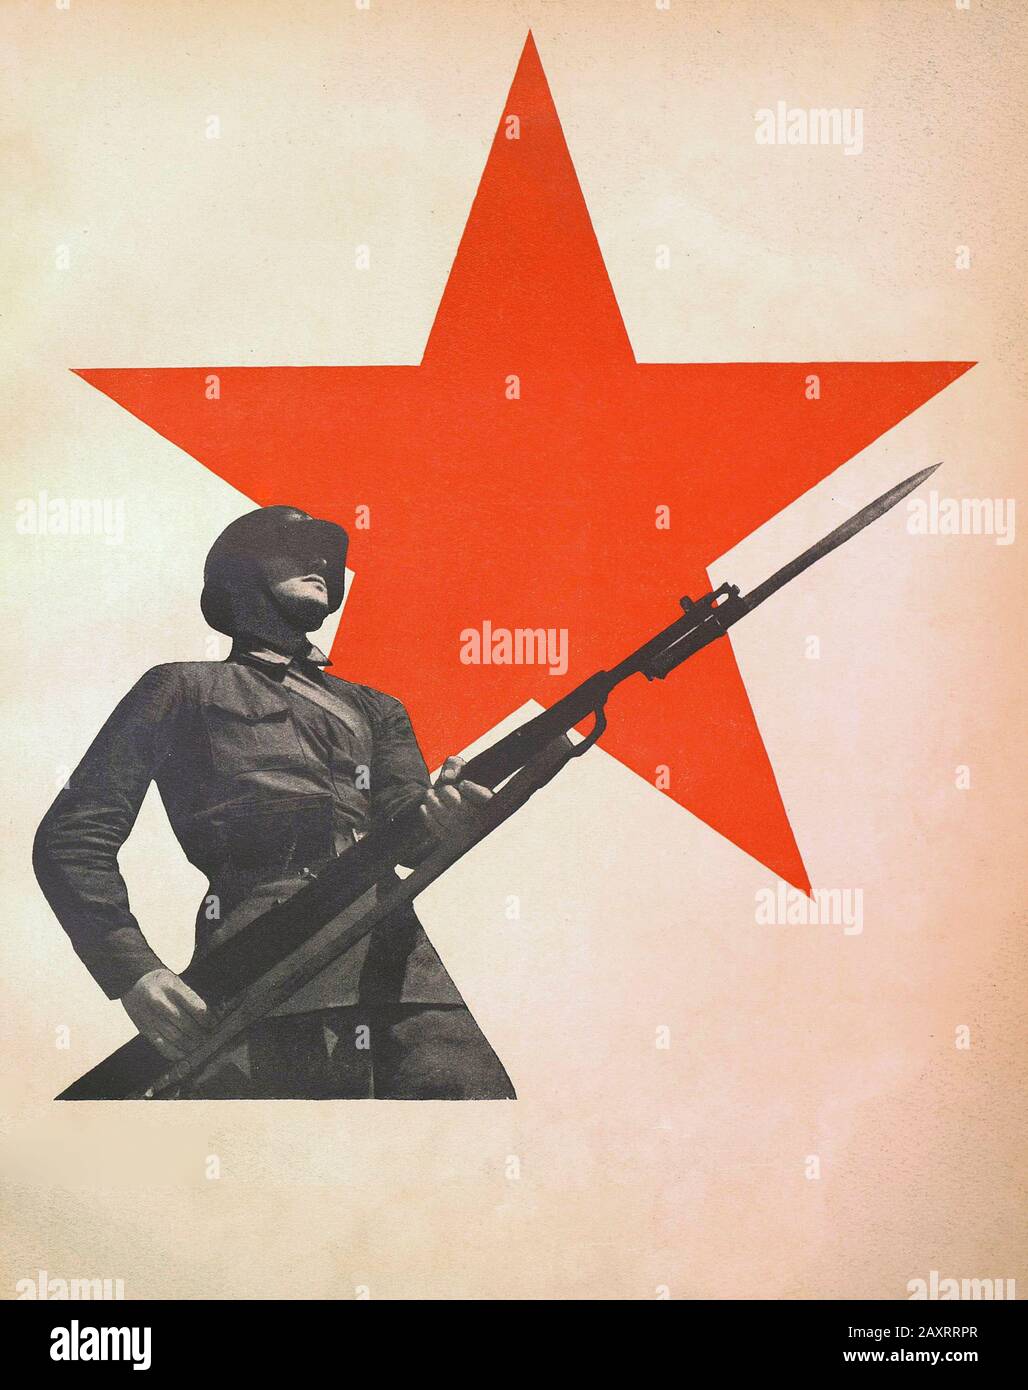 Esercito rosso in 1930s. Dal libro di propaganda sovietico del 1937. Soldato sovietico sullo sfondo di una stella rossa. Foto Stock